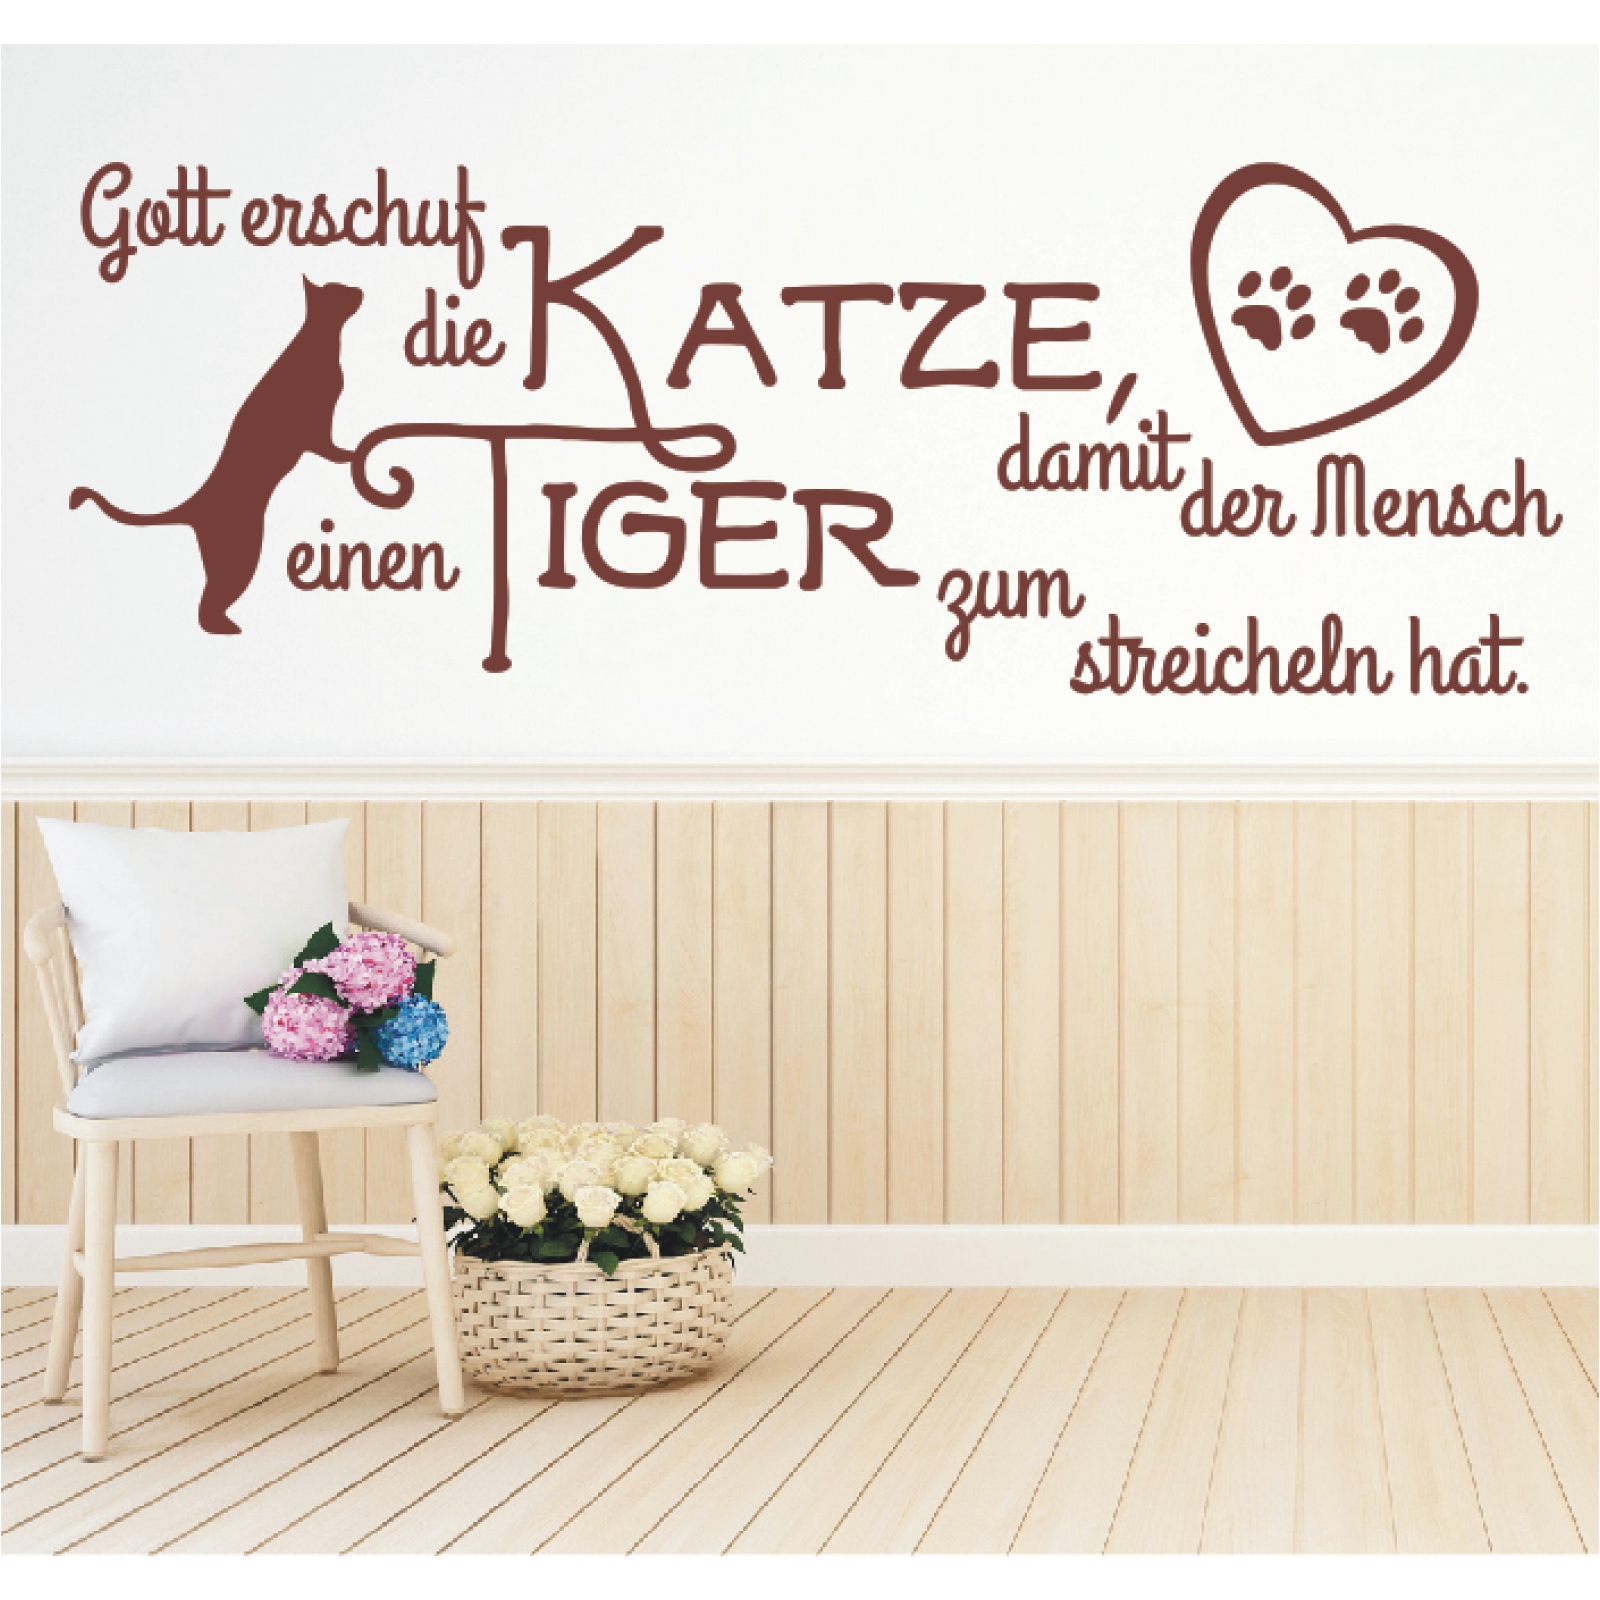 Details Zu Wandtattoo Spruch Gott Erschuf Die Katze Mensch Tiger Wandaufkleber